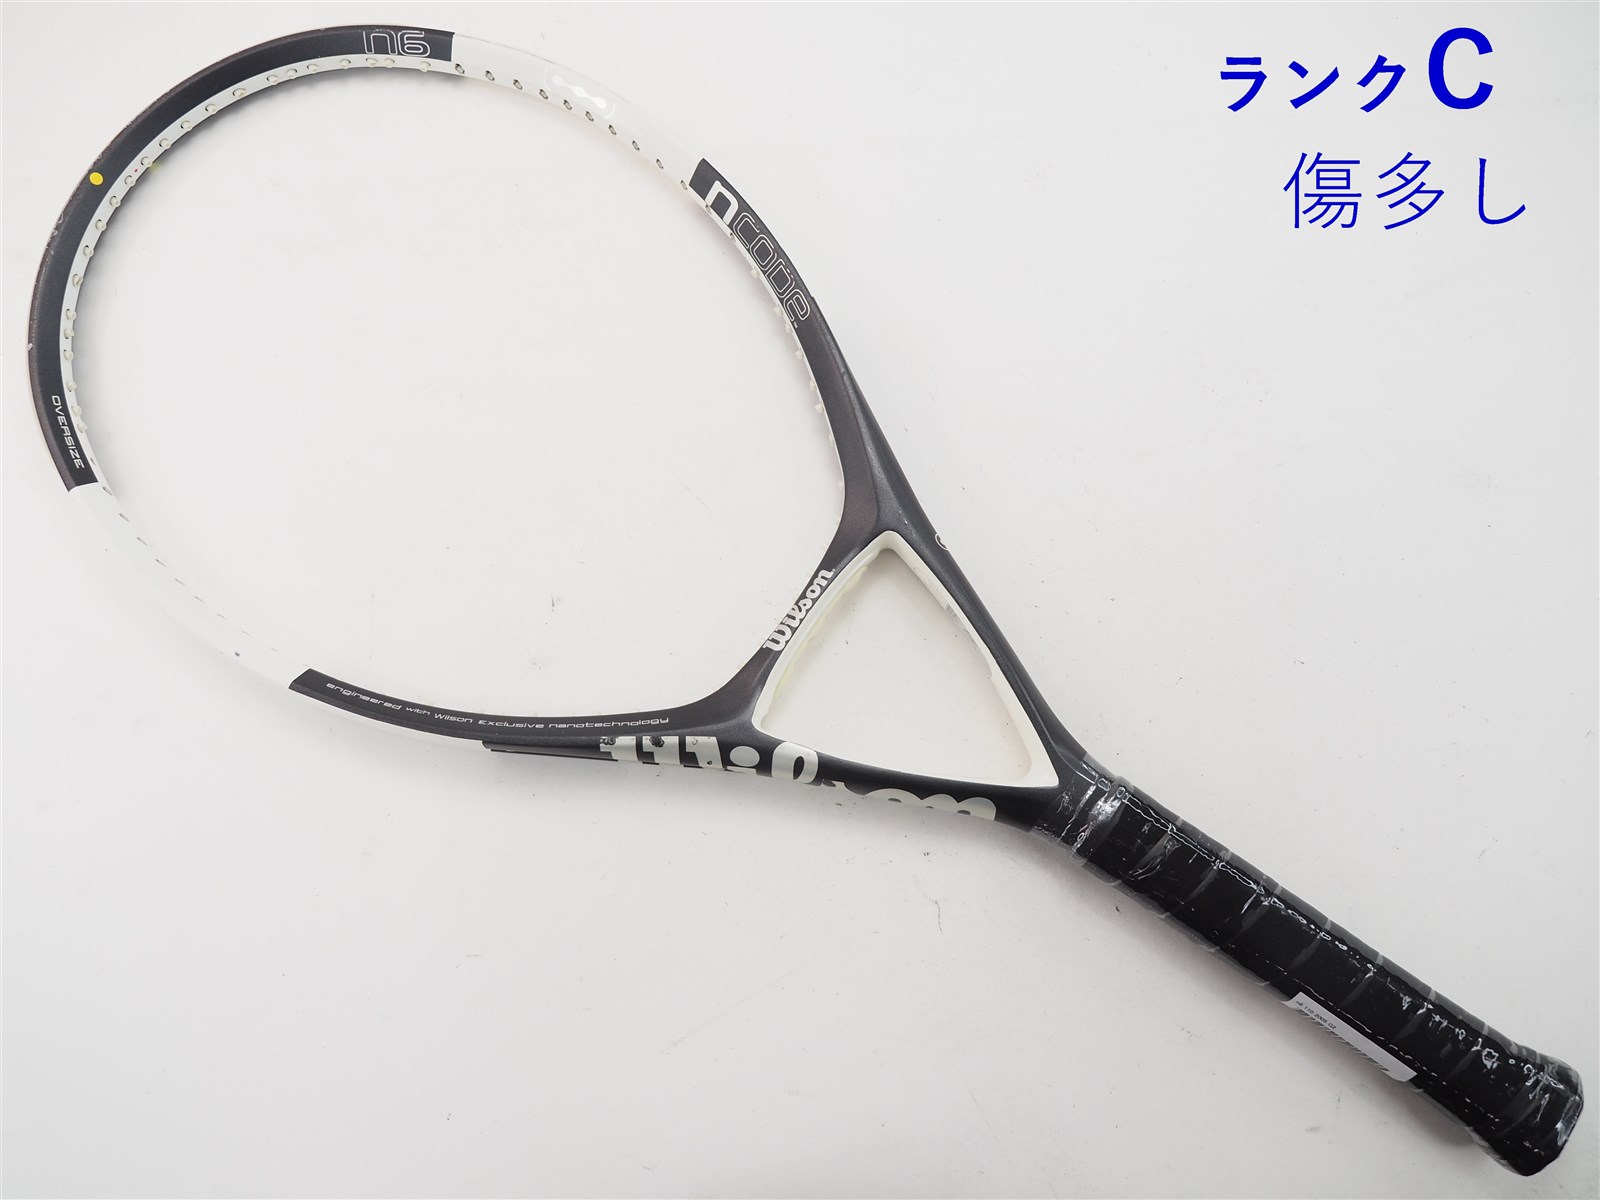 テニスラケット ウィルソン エヌ5 100 2005年モデル (G2)WILSON n5 100 2005